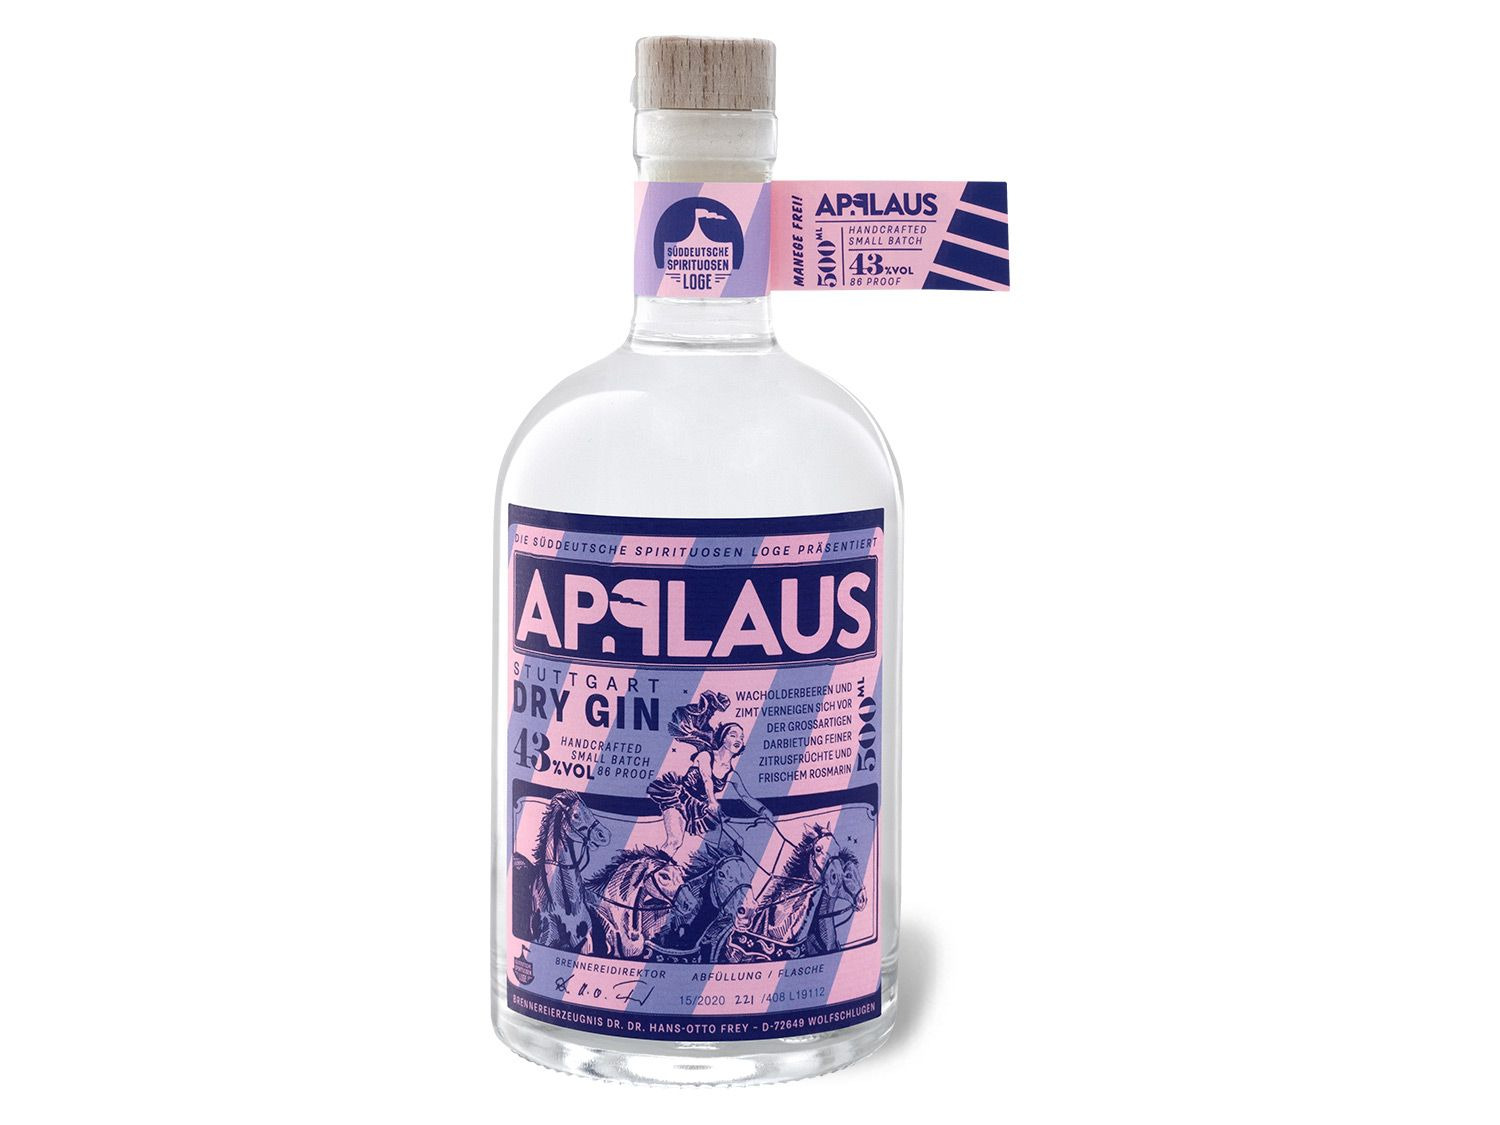 Applaus Dry Gin Original 43% Vol online kaufen | LIDL